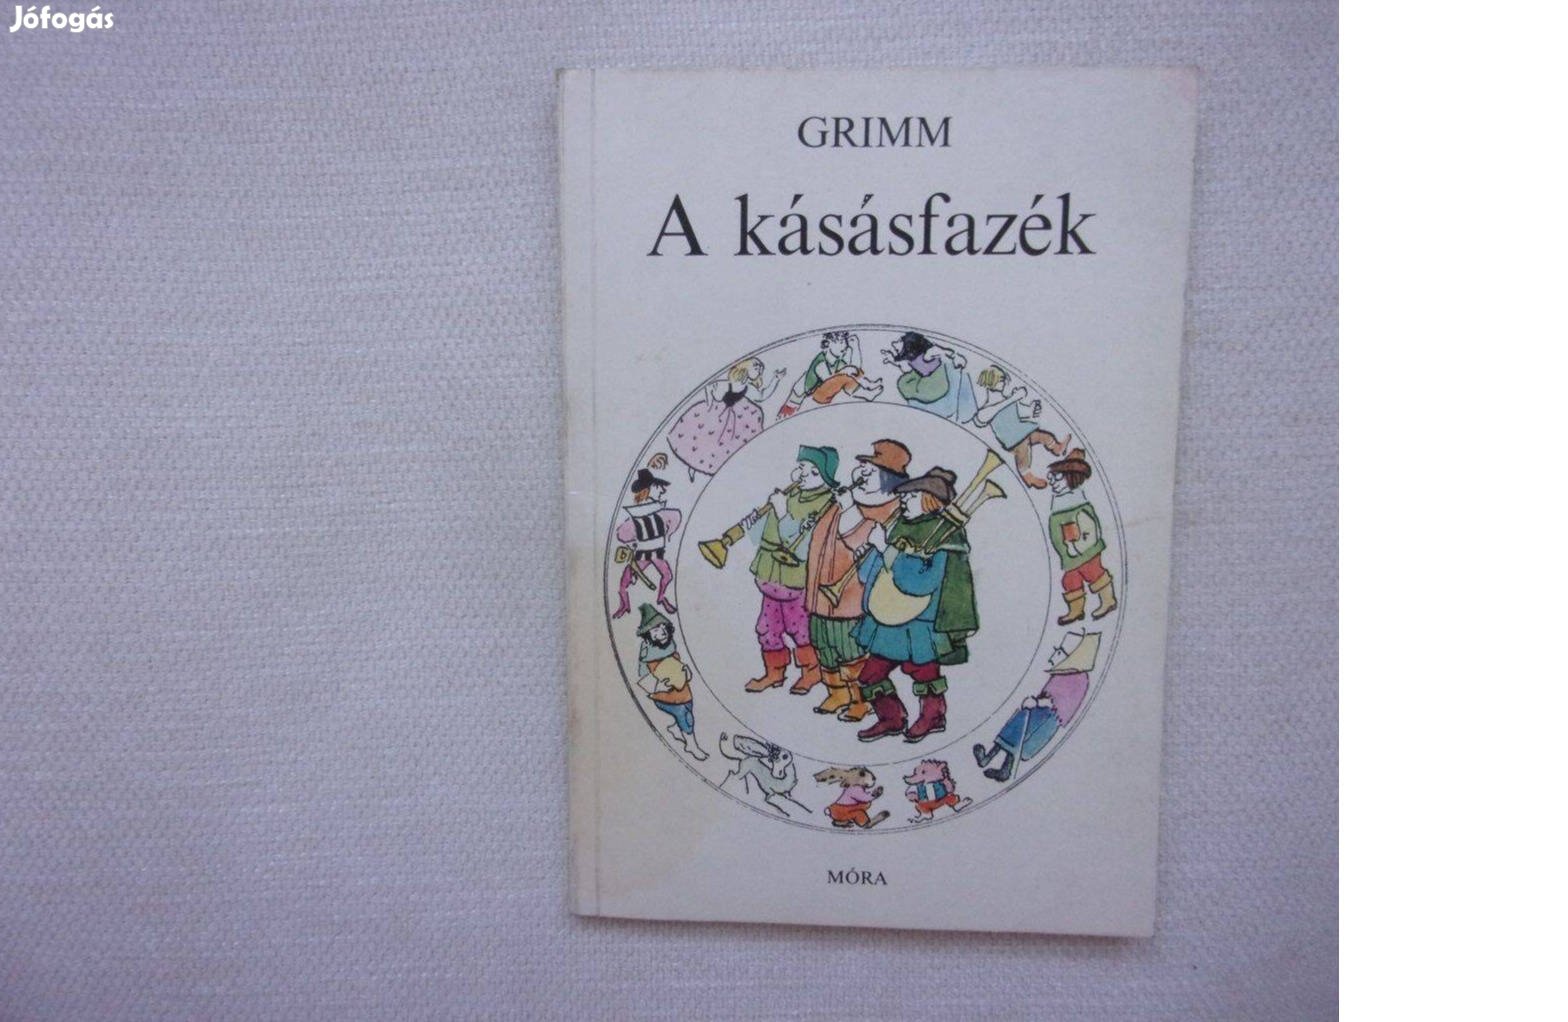 Grimm A kásásfazék